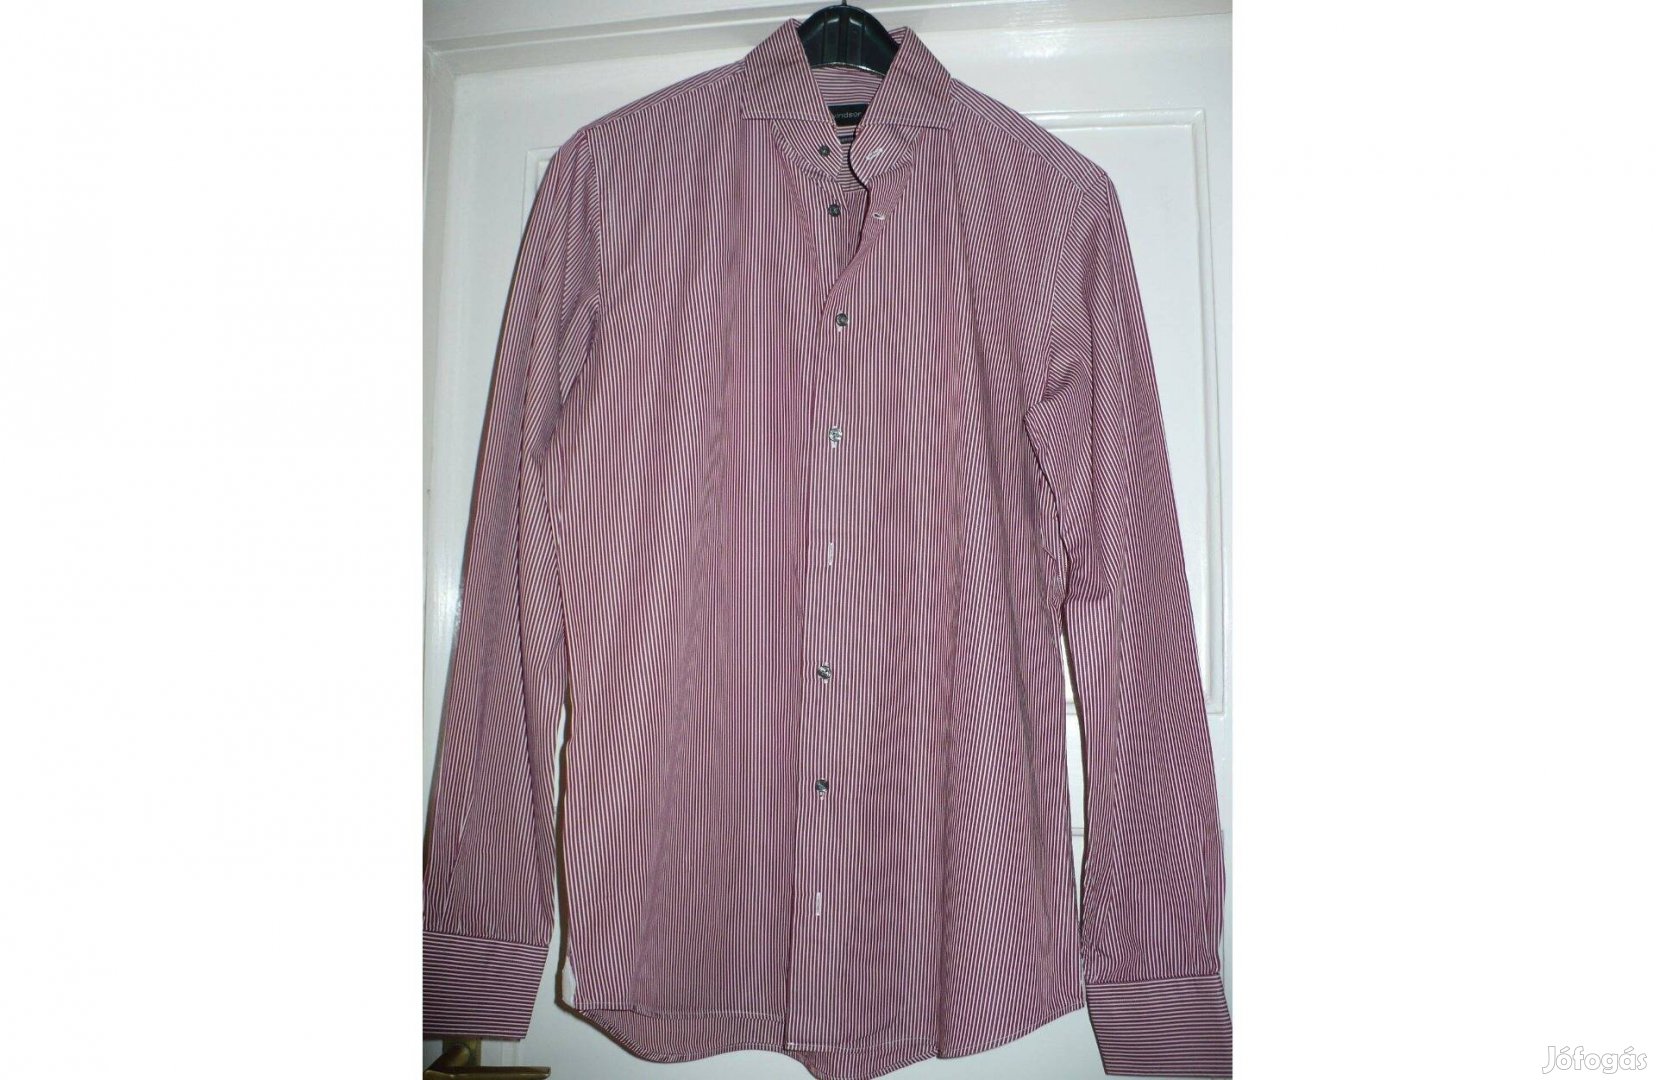 Windsor márkájú férfi ing, 40-es méret